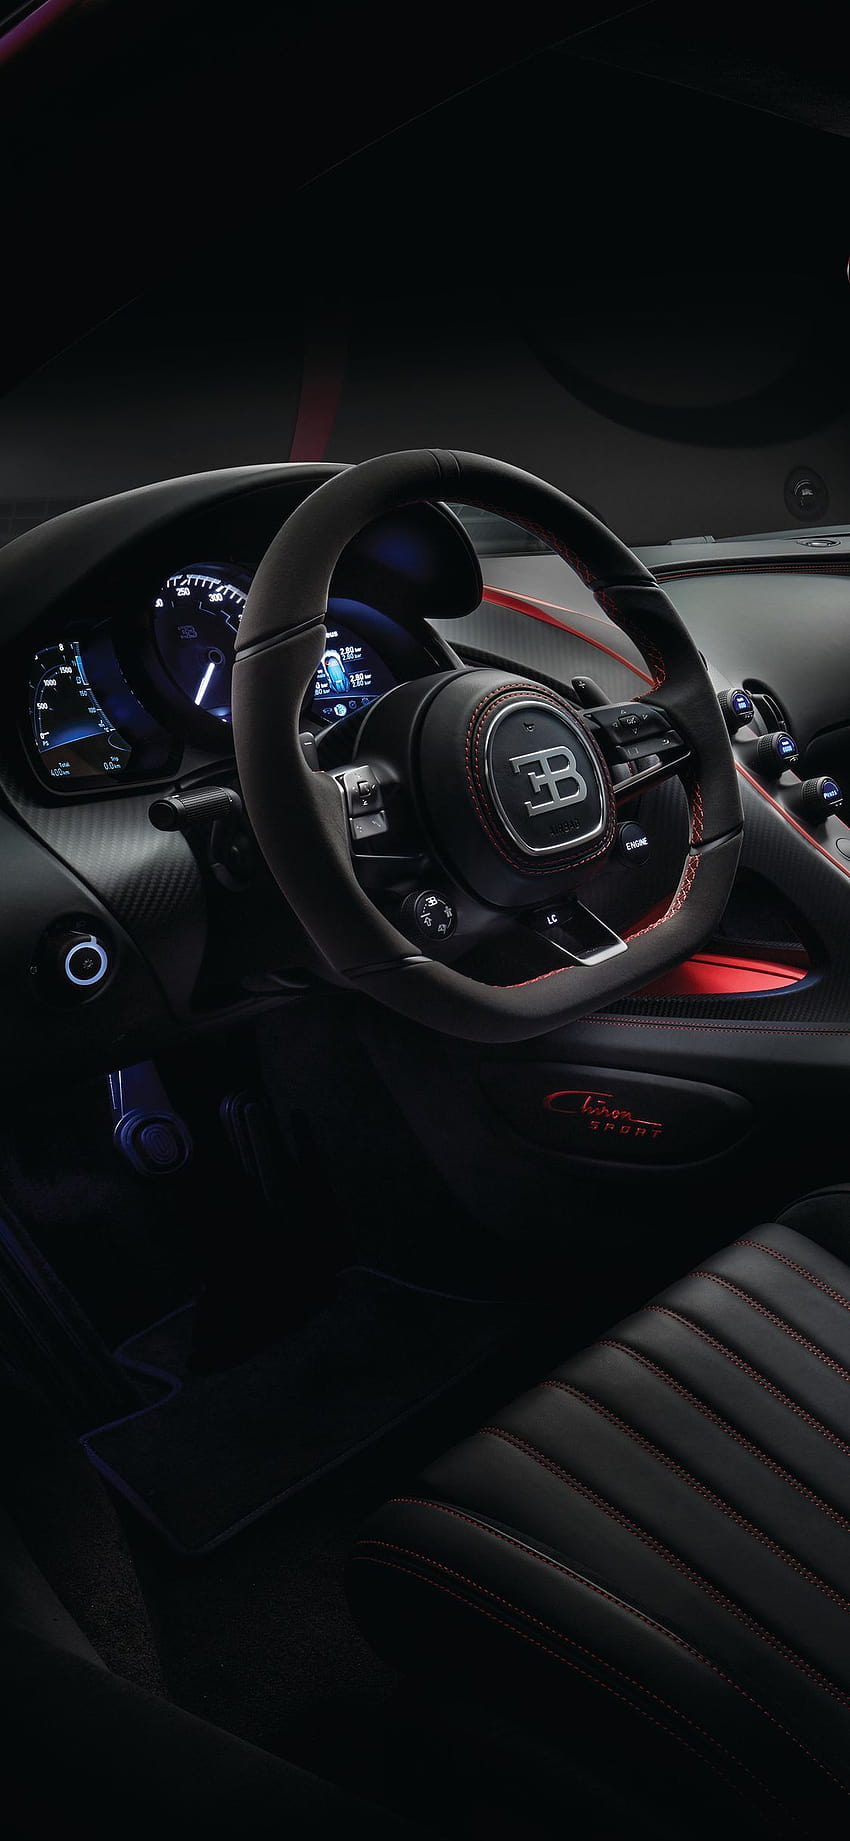 1125x2436 Bugatti Chiron Interior 2018 Iphone XS, Iphone 10, Iphone X, s, y, bugatti car iphone fondo de pantalla del teléfono